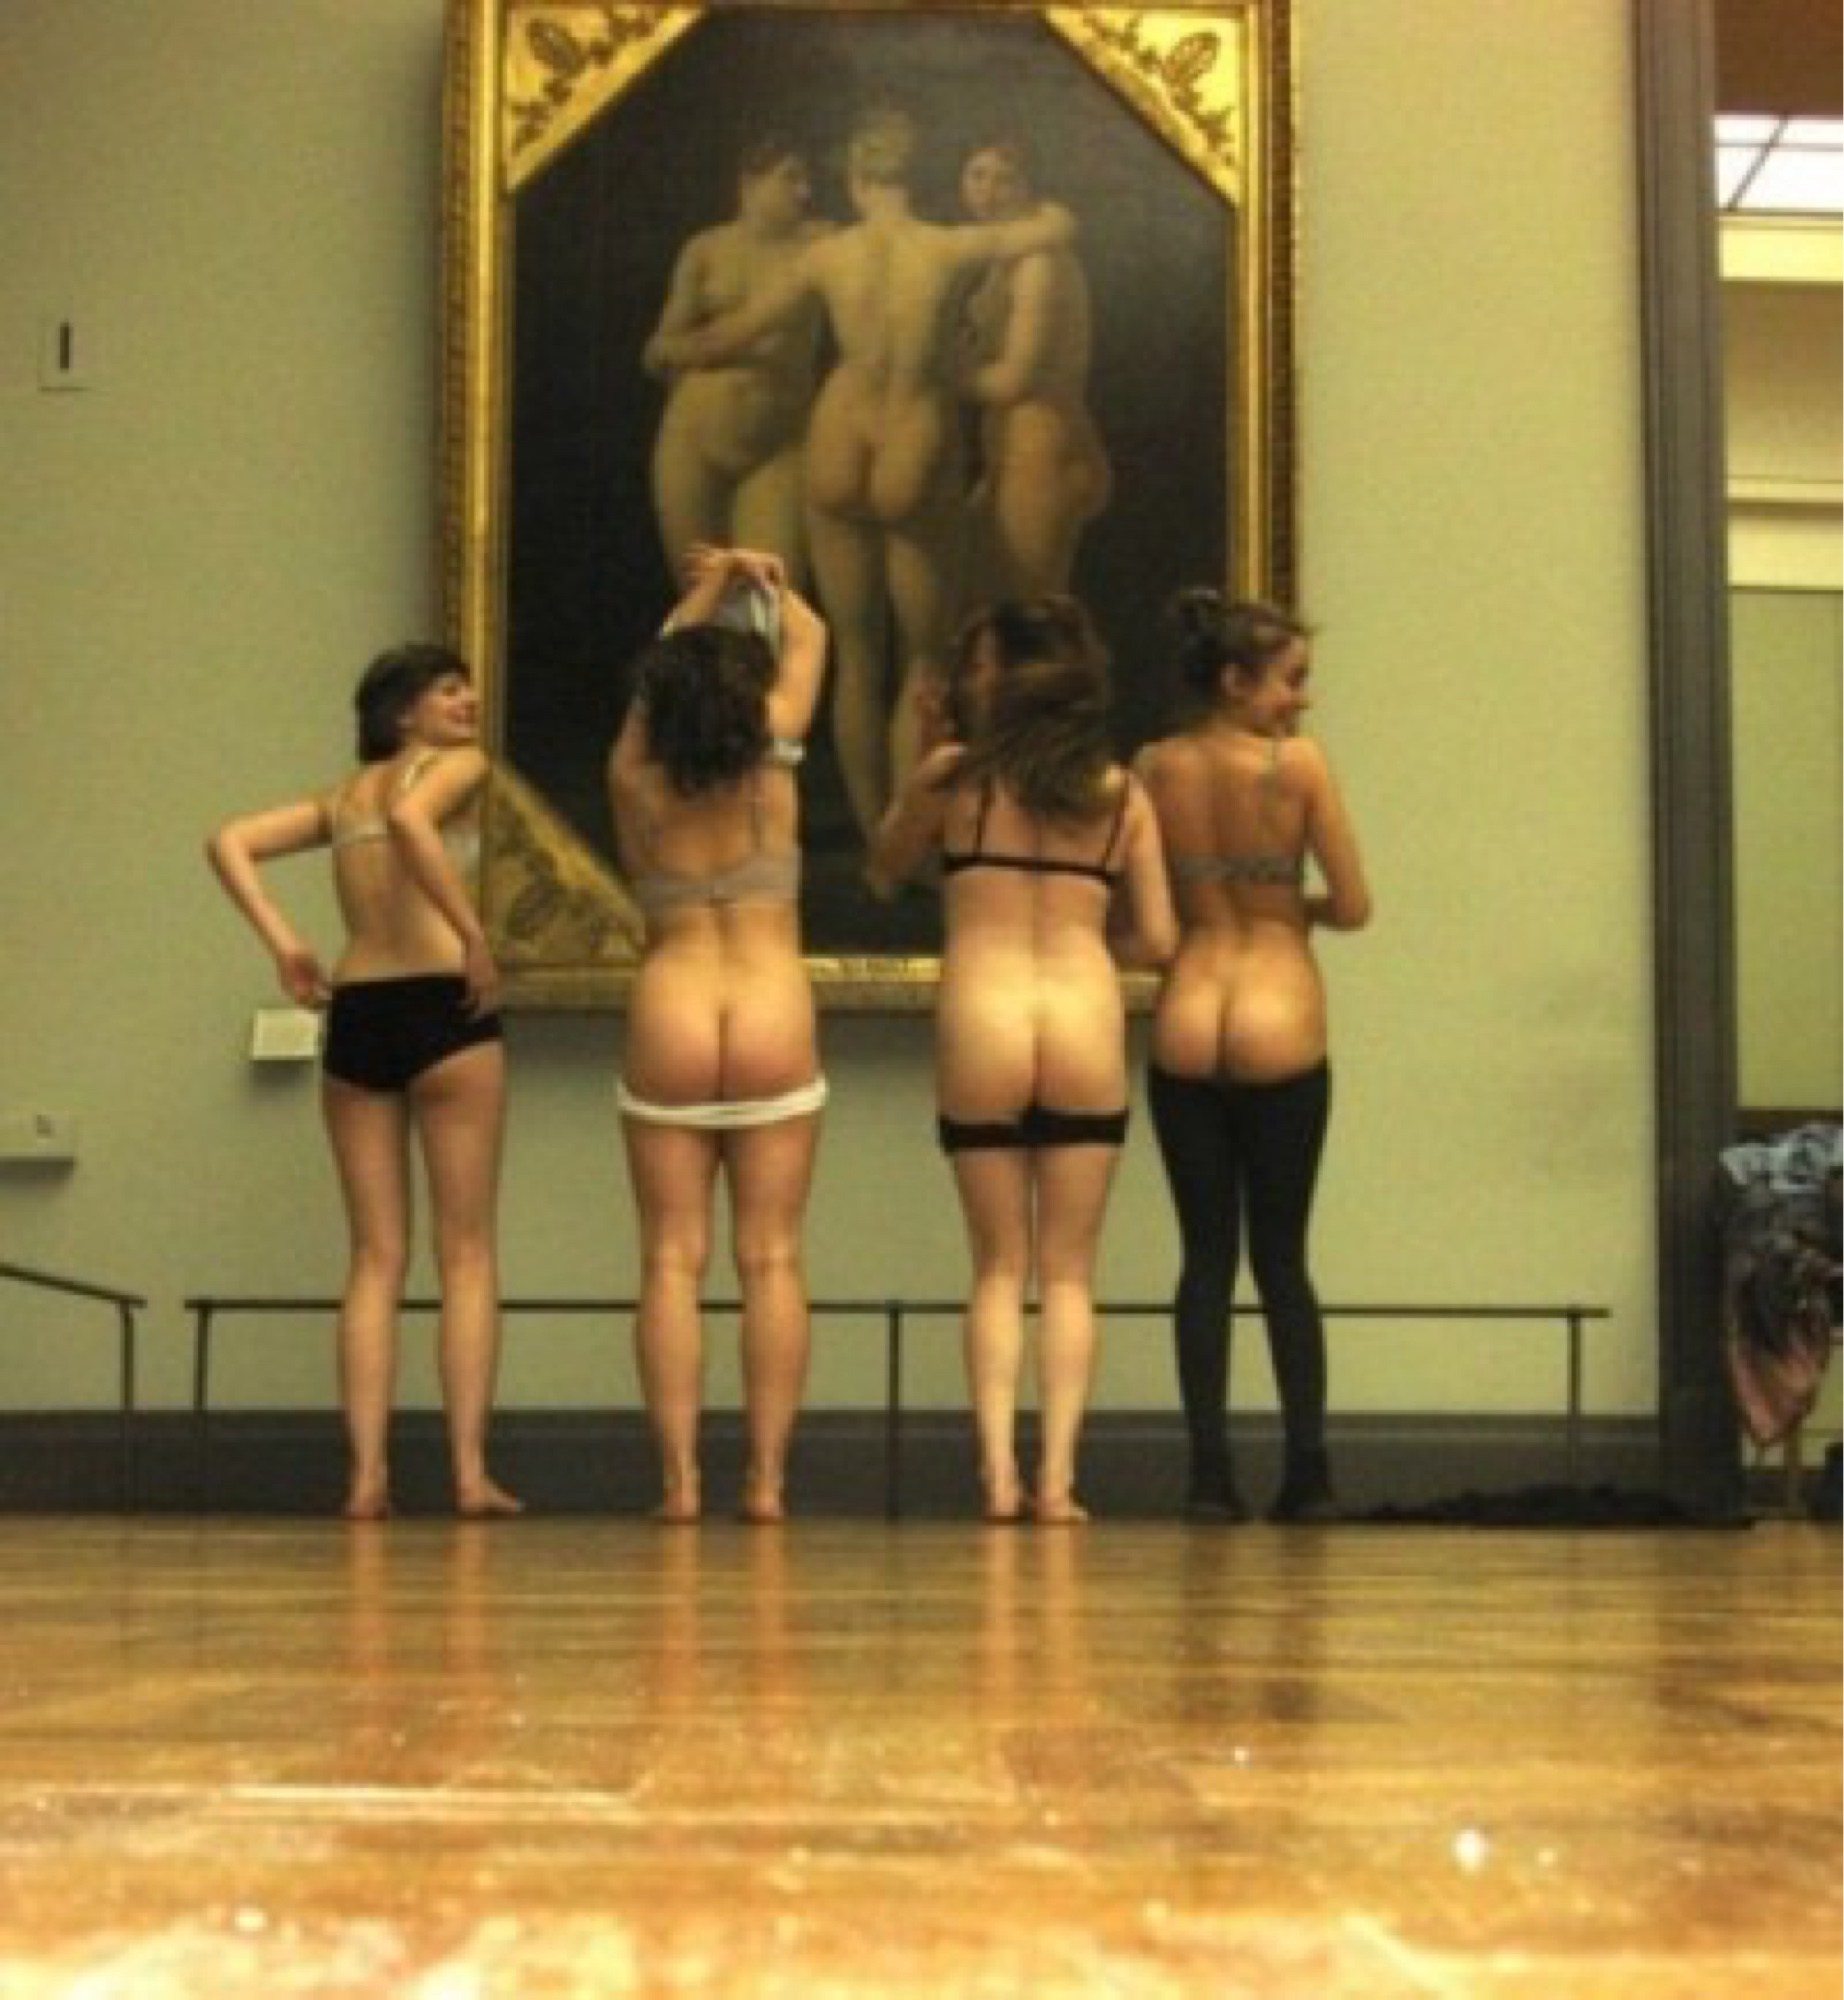 Imagen etiquetada con: Art, Ass - Butt, Museum